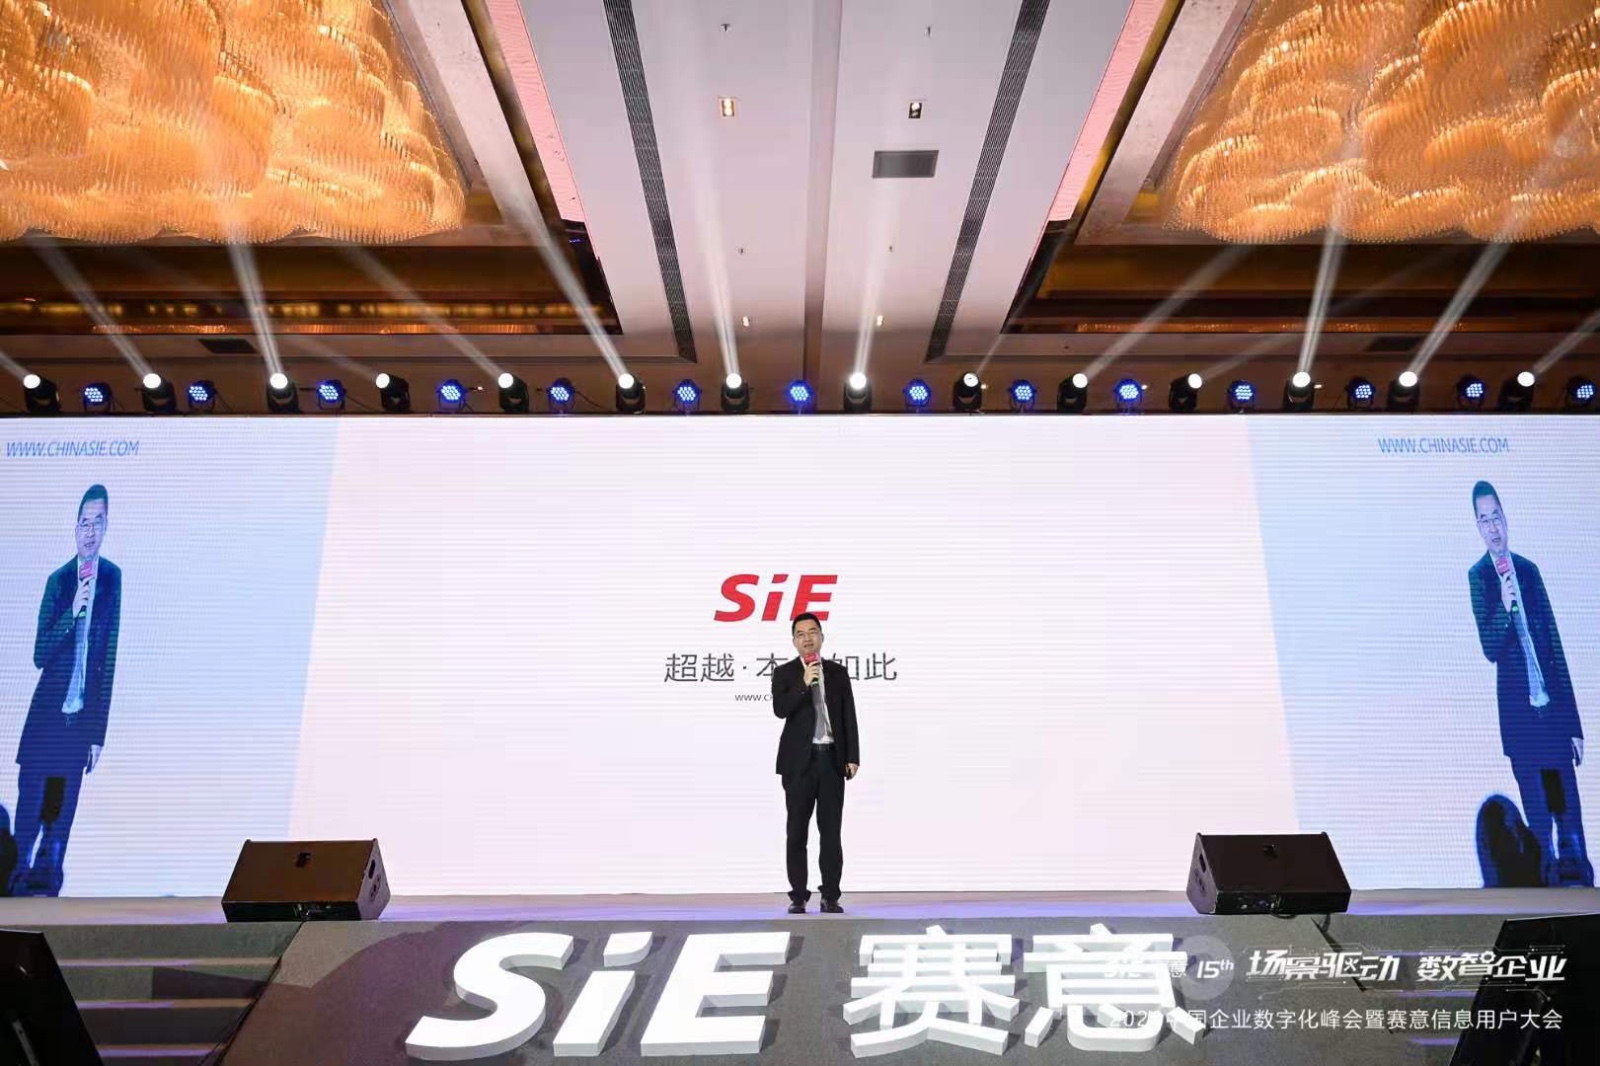 Securities Times | Chairman of Saiyi Information Zhang Chengkang: Building a Digital Intelligence En